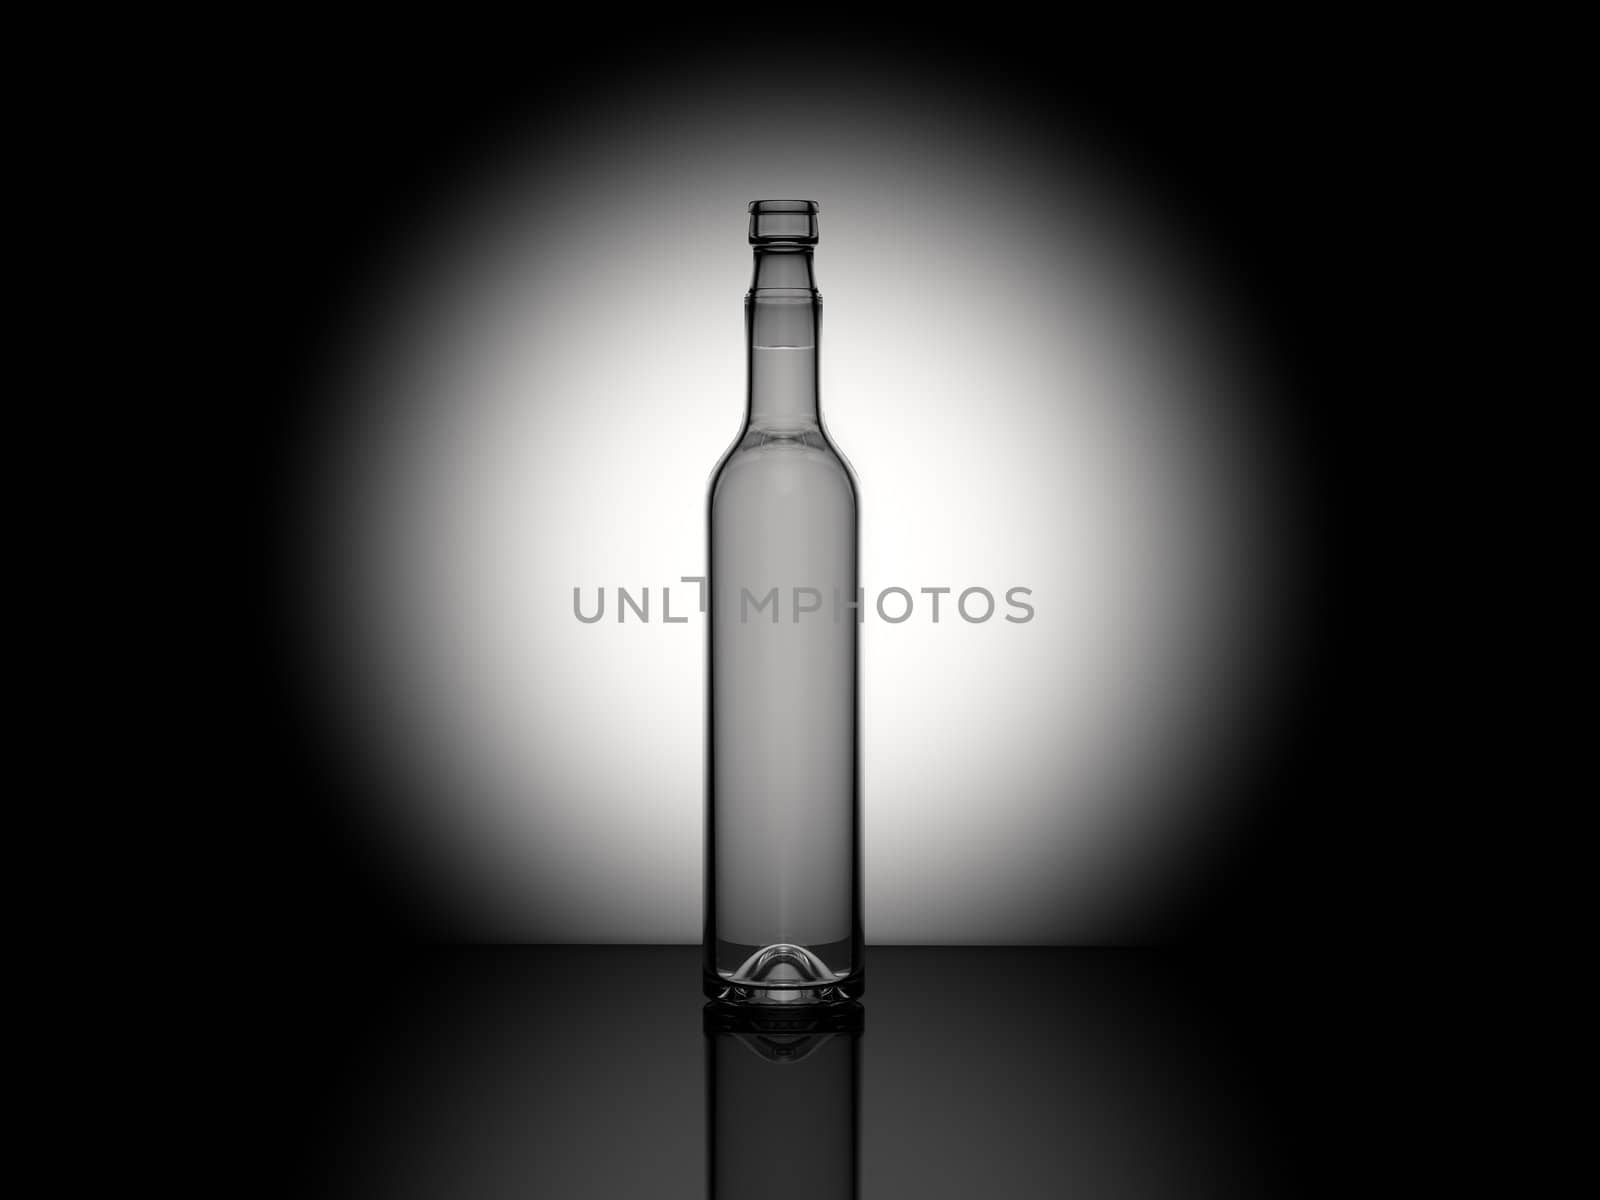 Bottle rendering by Vectorex